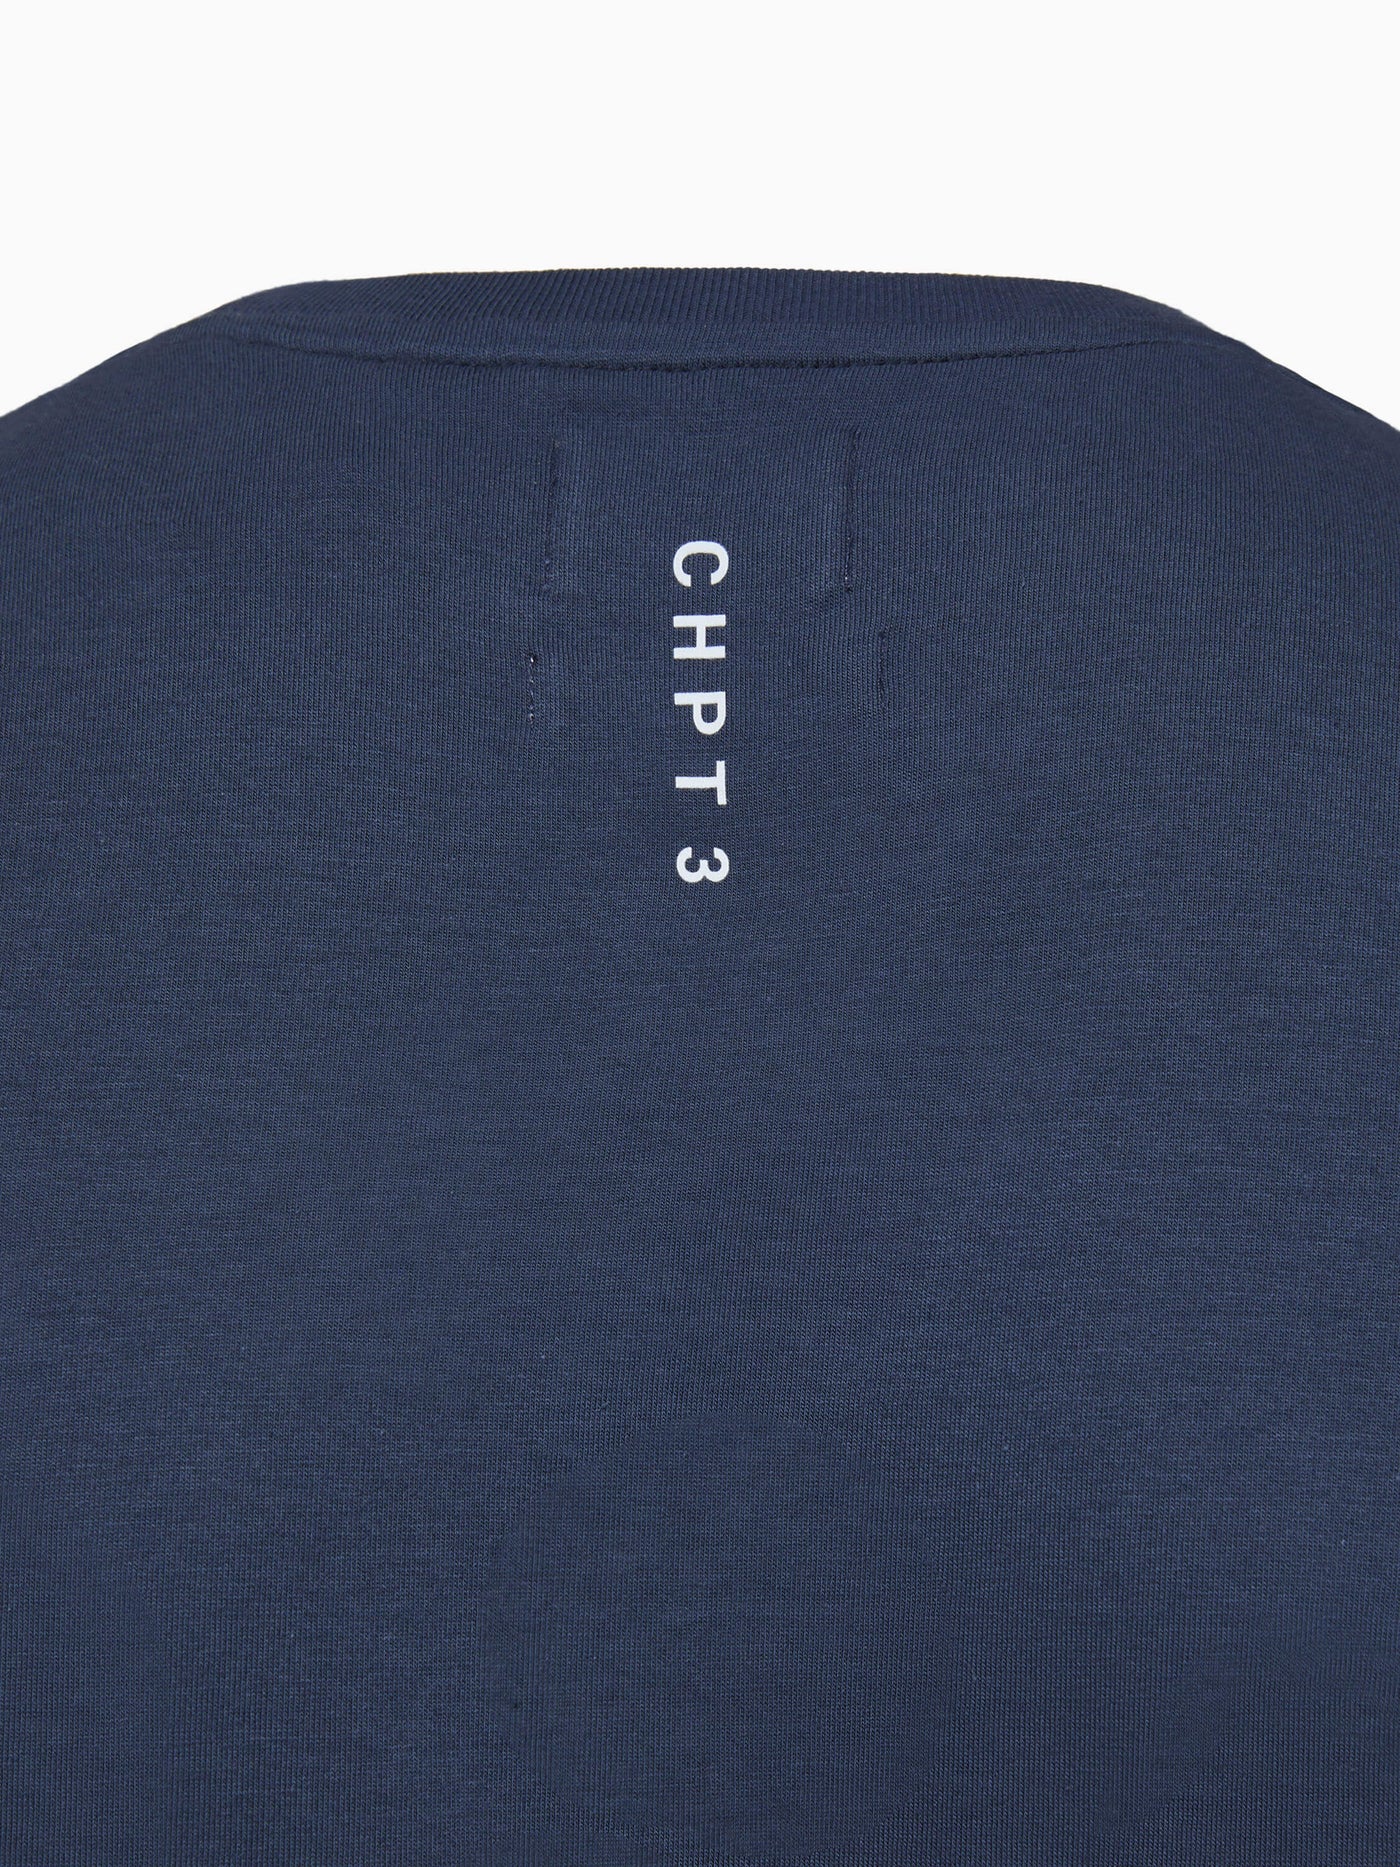 CHPT3 Elysée men's organic cotton t-shirt in colour Outer Space blue, close up showing print detail #color_outer-space-blue